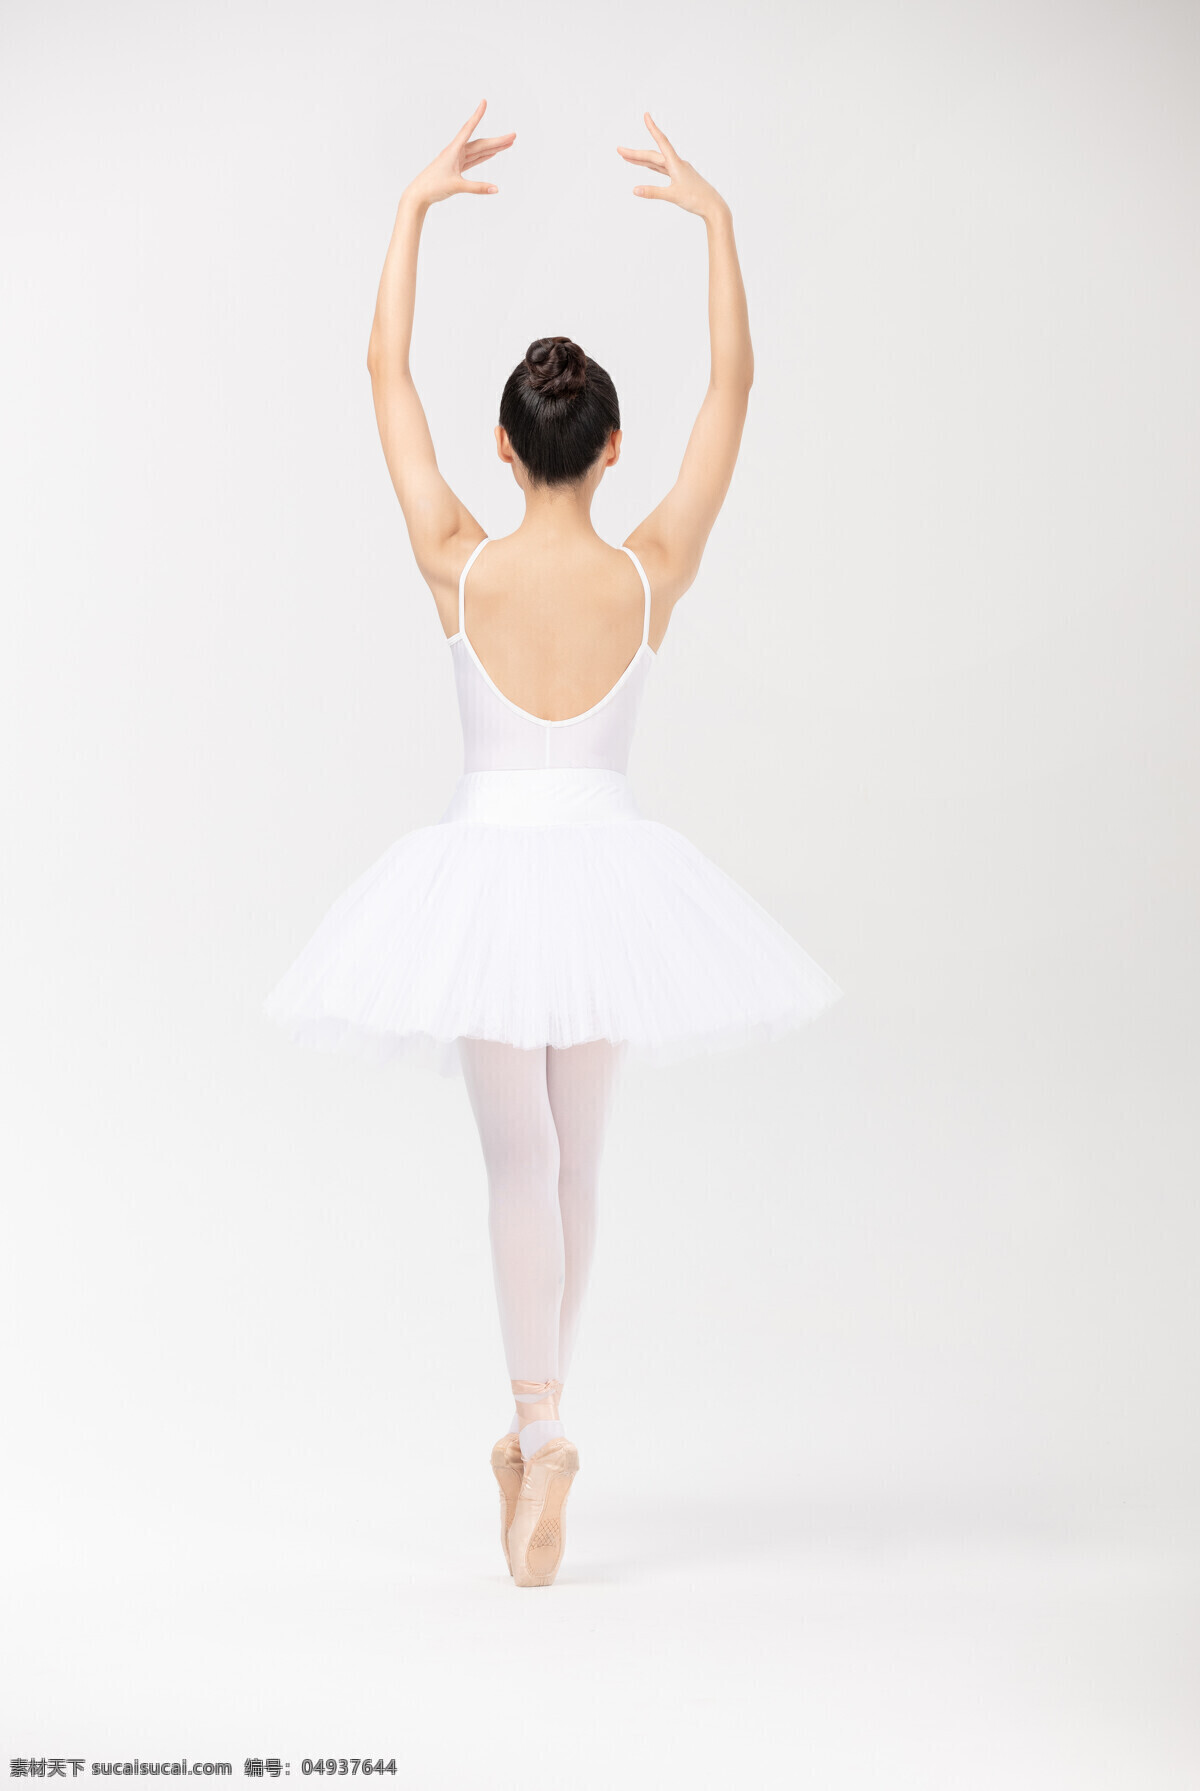 芭蕾 女性人物 舞蹈 背景 女性 人物 运动瑜伽背景